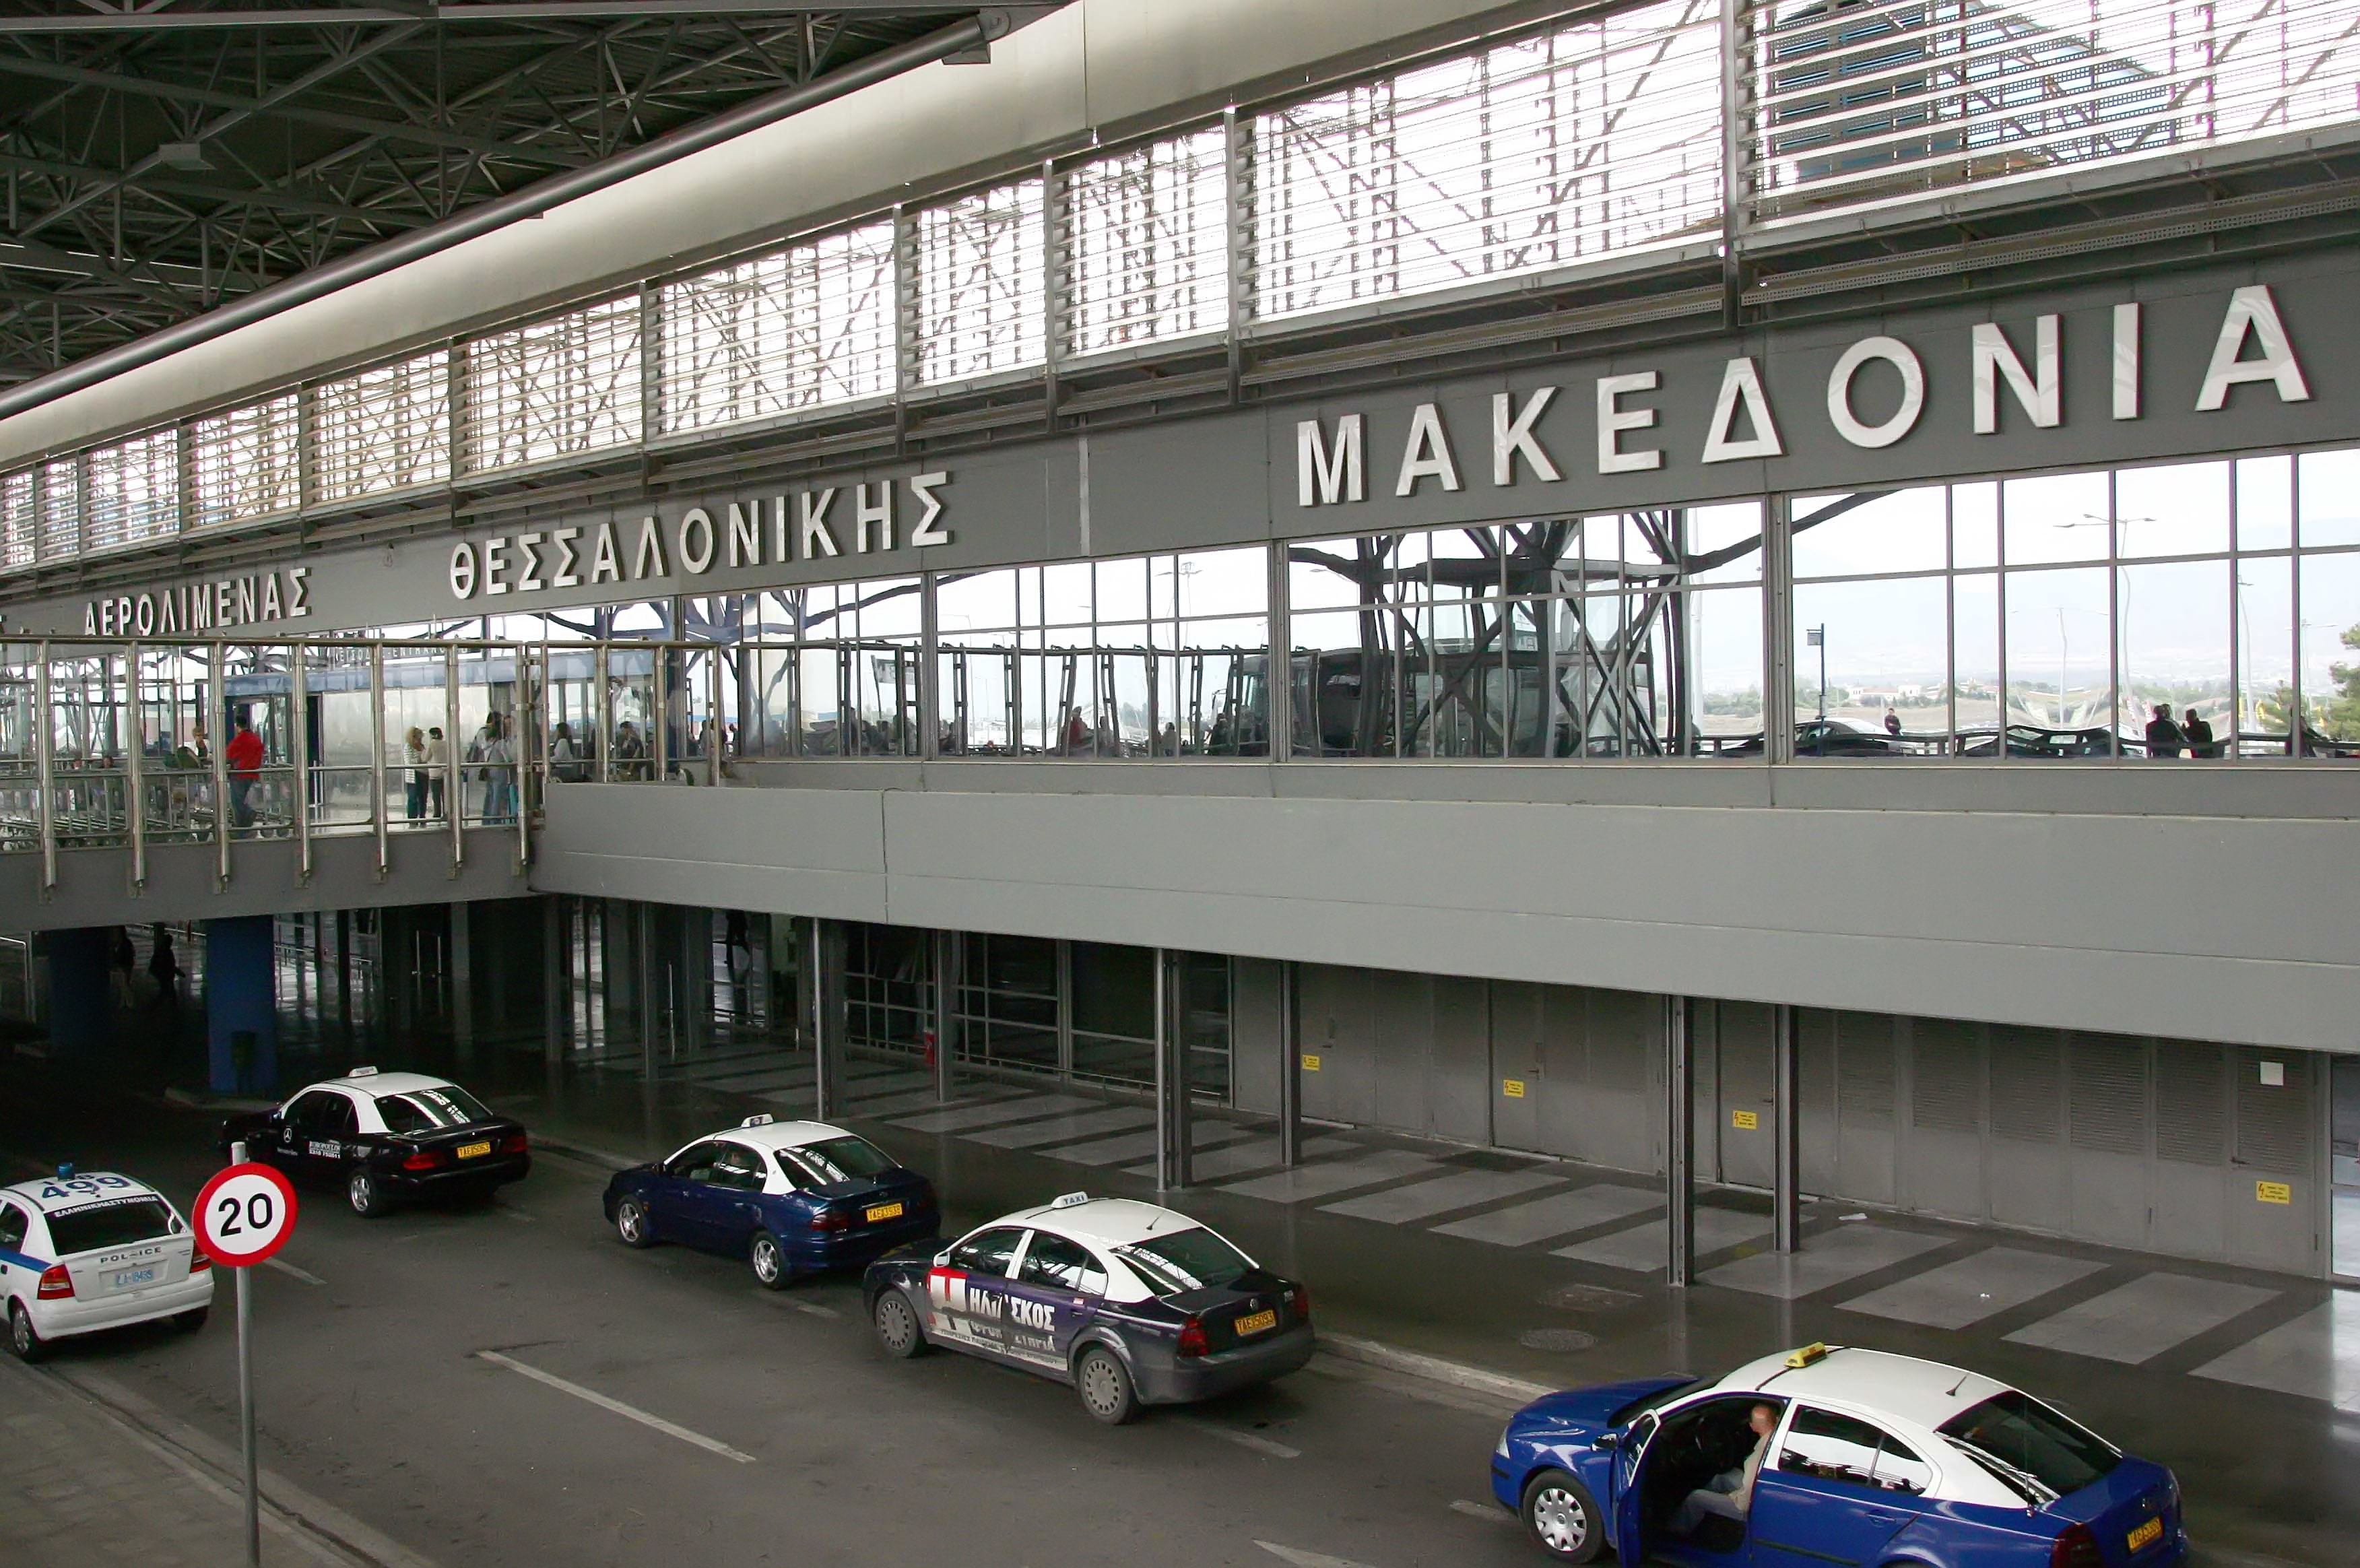 Ανησυχία για το αεροδρόμιο Μακεδονία από Τζιτζικώστα – Μπουτάρη